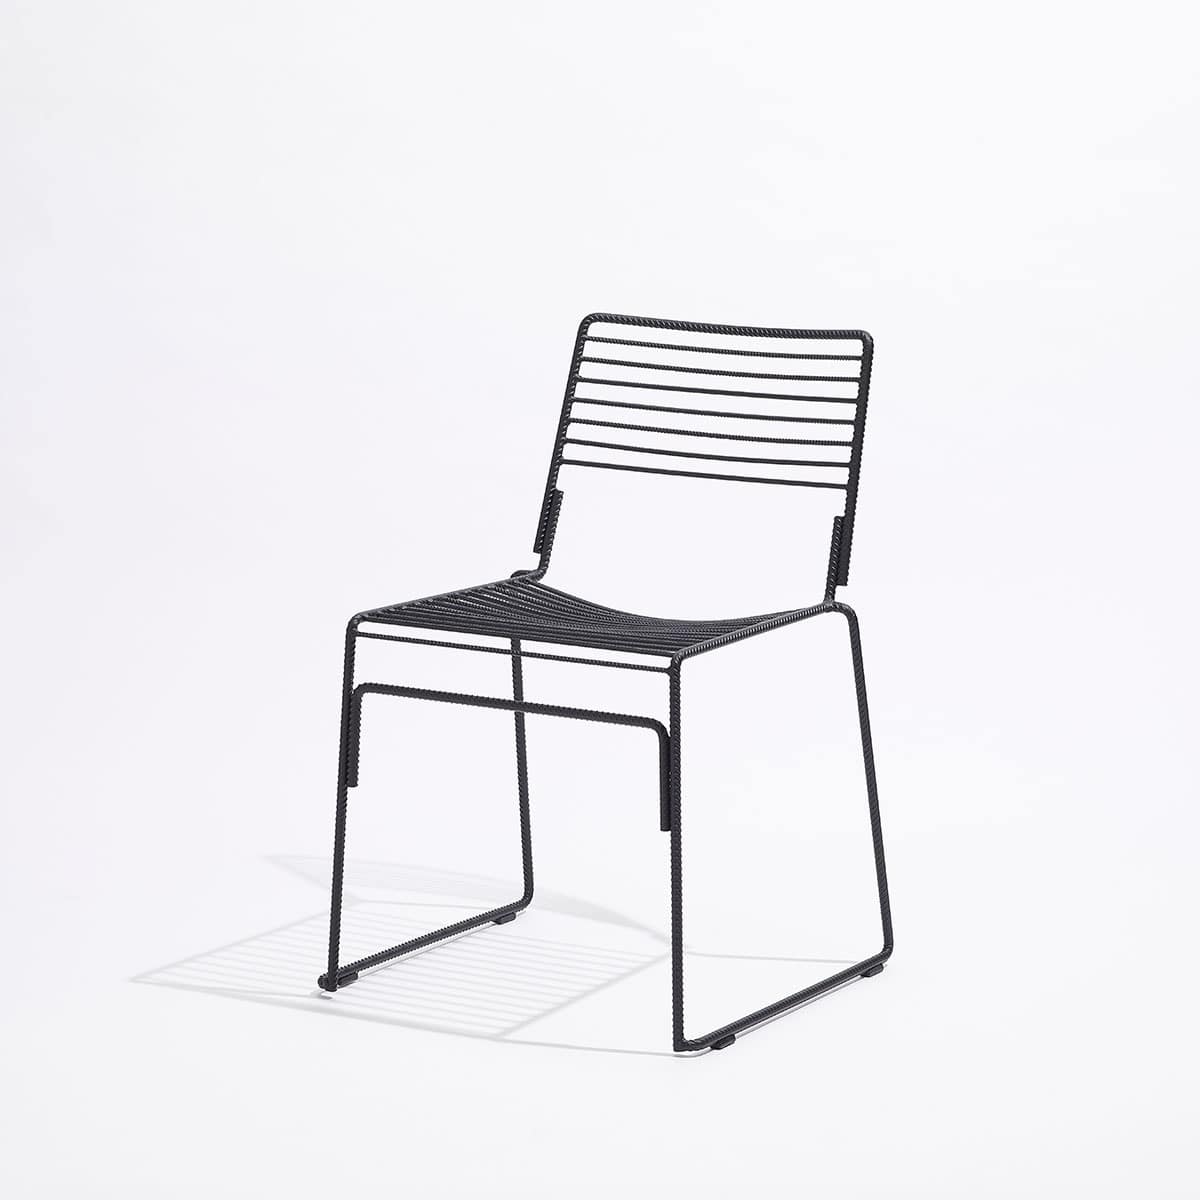 Roxor chair